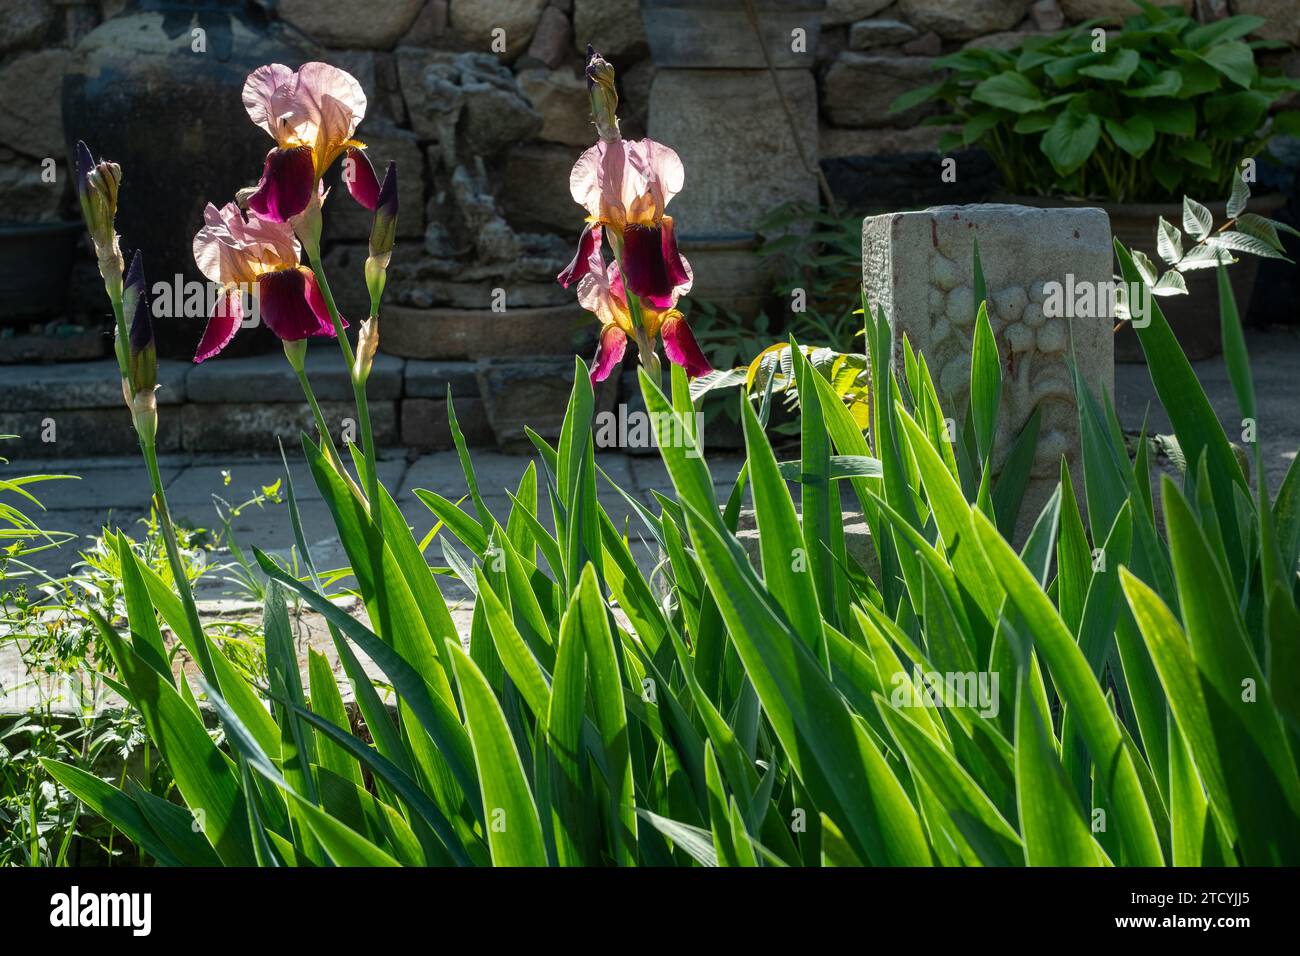 German Iris or Iris germanica, flower Stock Photo